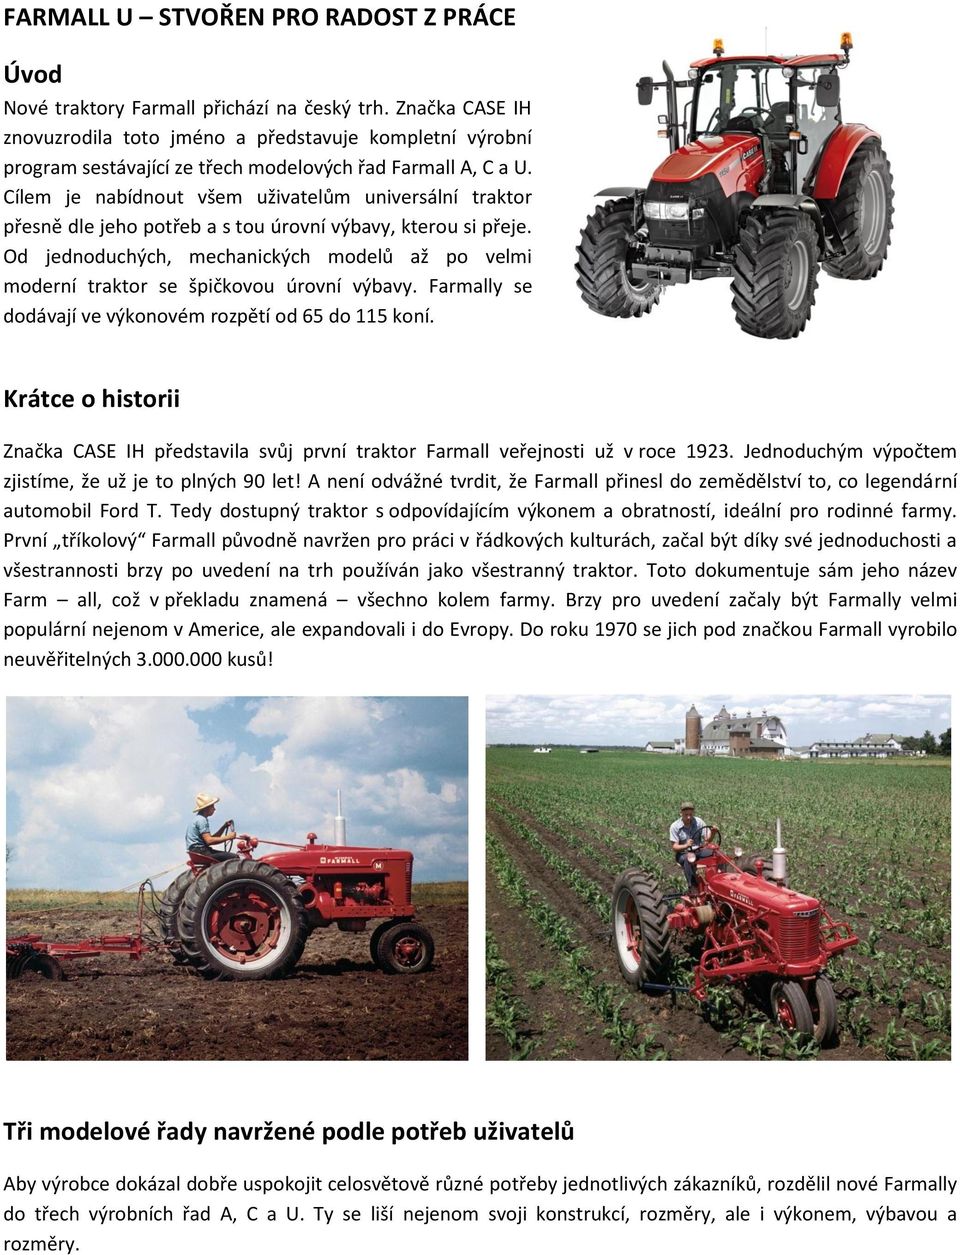 Cílem je nabídnout všem uživatelům universální traktor přesně dle jeho potřeb a s tou úrovní výbavy, kterou si přeje.